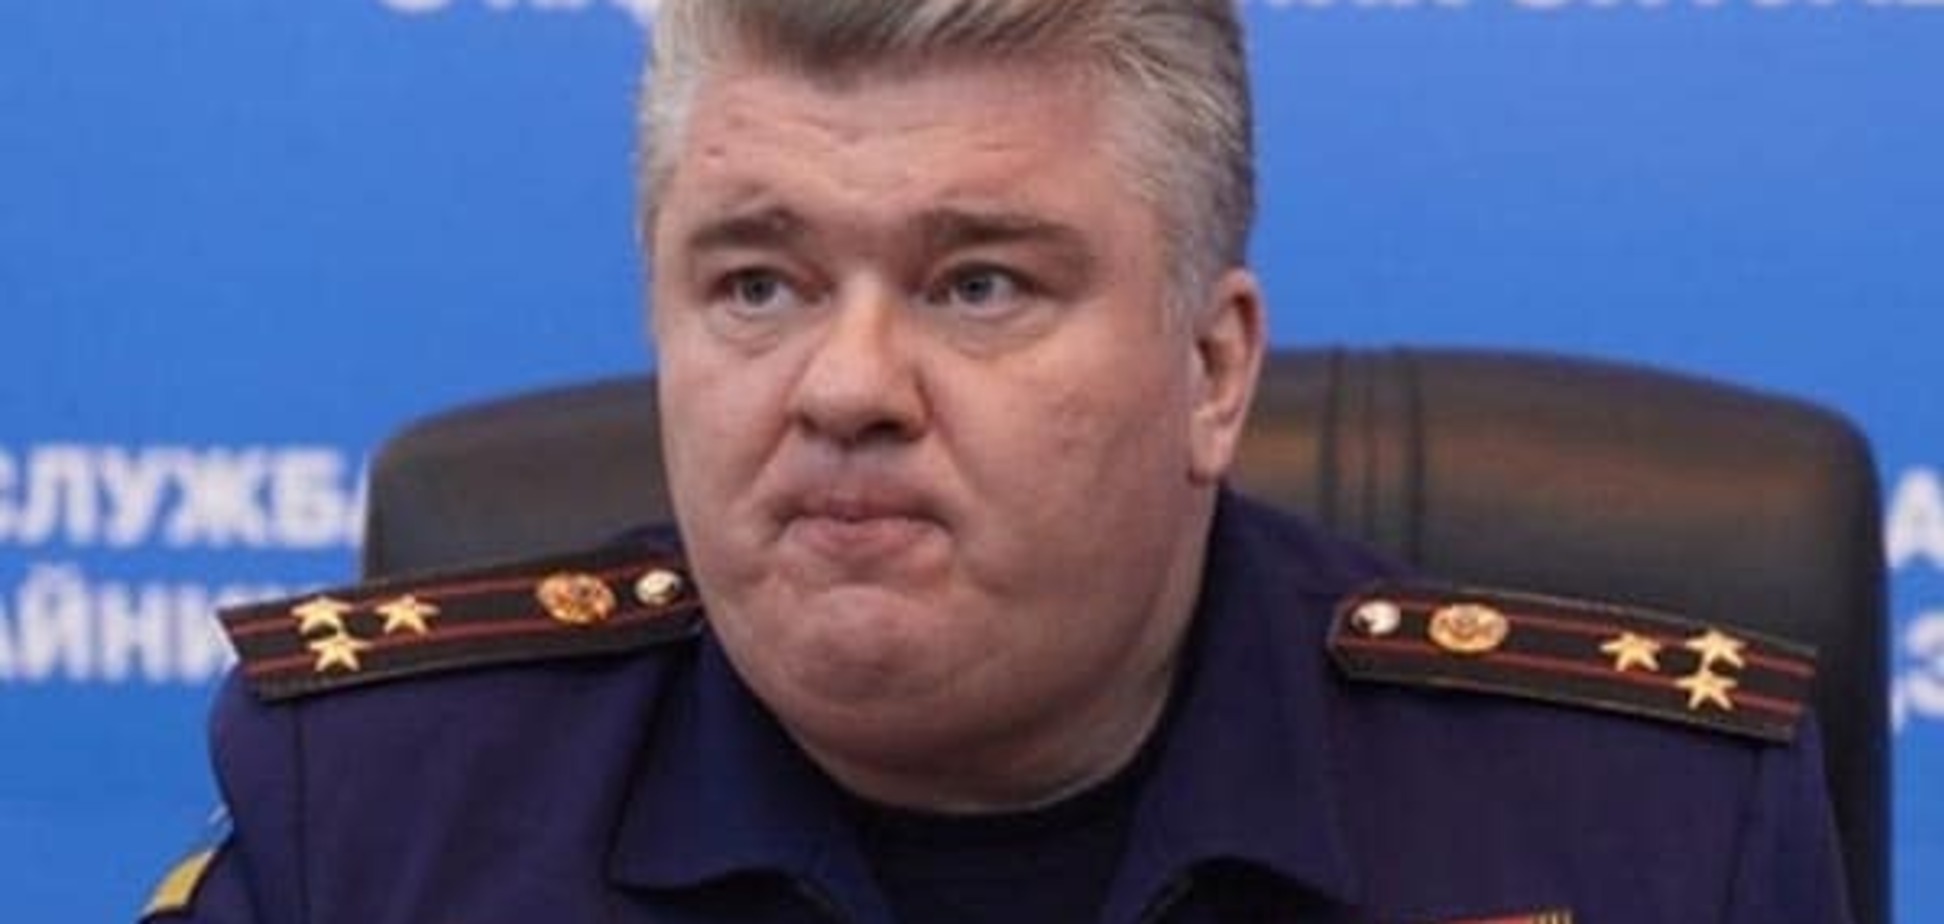 Экс-глава ГСЧС Сергей Бочковский: дело против меня шито белыми нитками